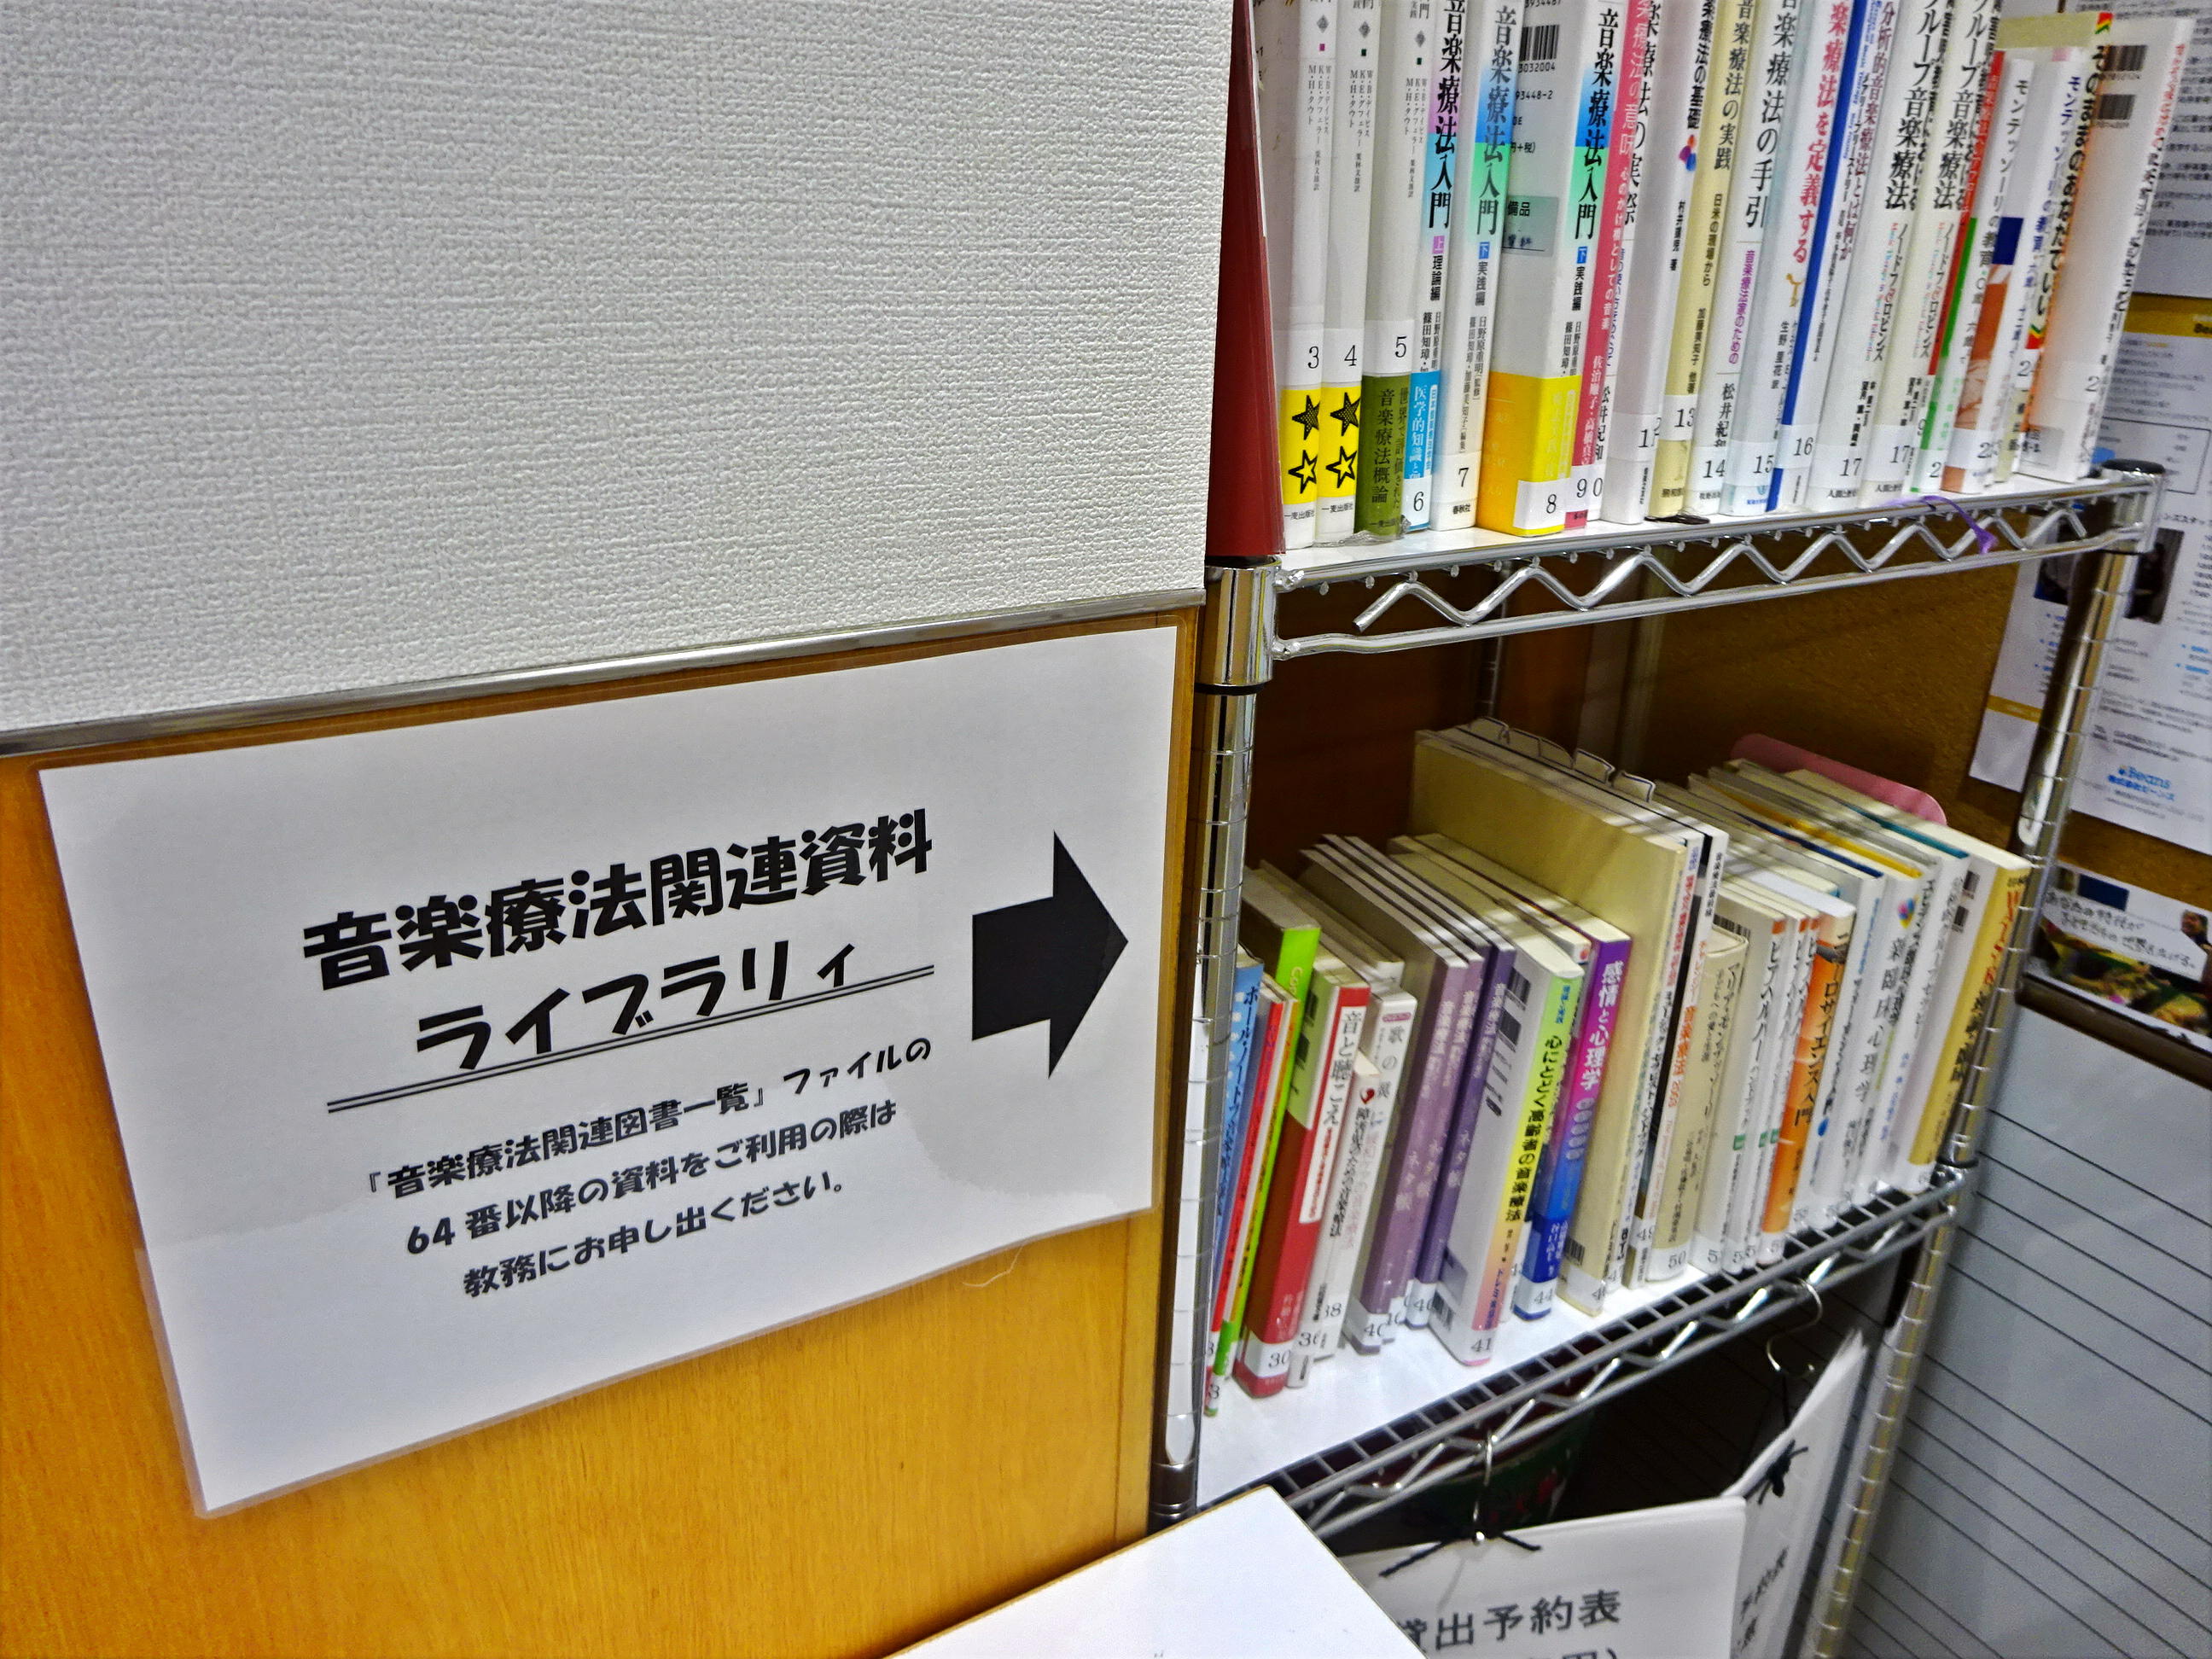 国立音楽院 東京校２階にある音楽療法関連資料ライブラリィの写真。約40冊ほどの本が二段に並ぶ。